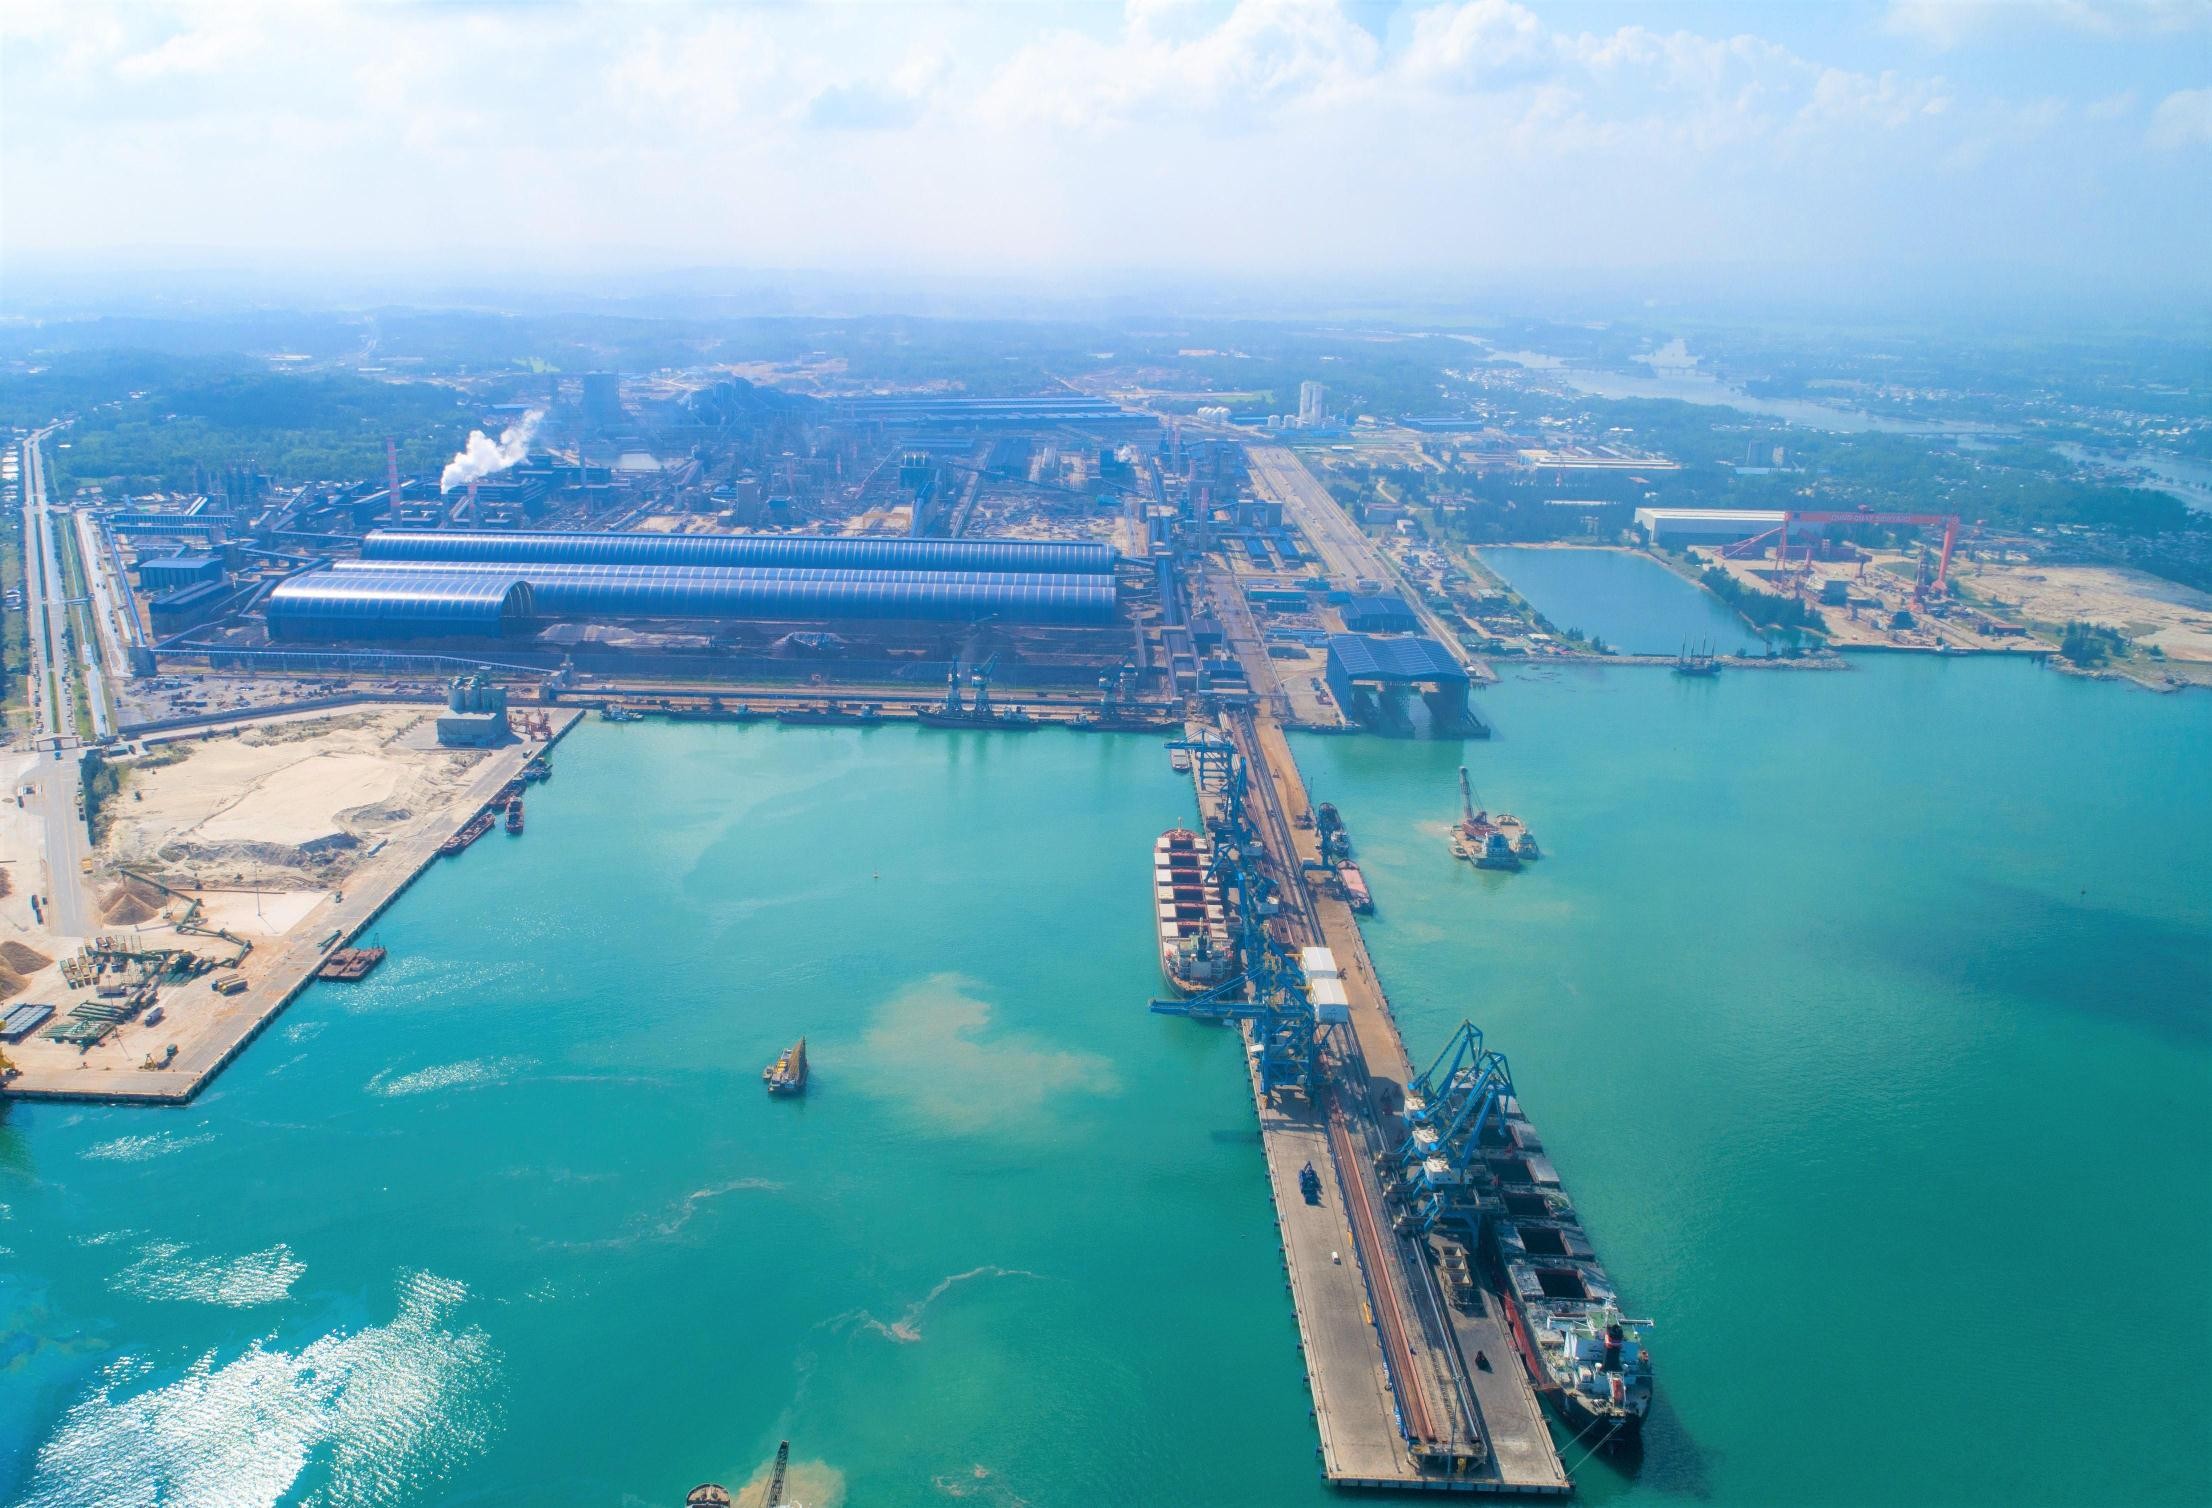 Tỉnh Quảng Ngãi giao khu vực biển để xây dựng Bến cảng tổng hợp – container Hòa Phát Dung Quất